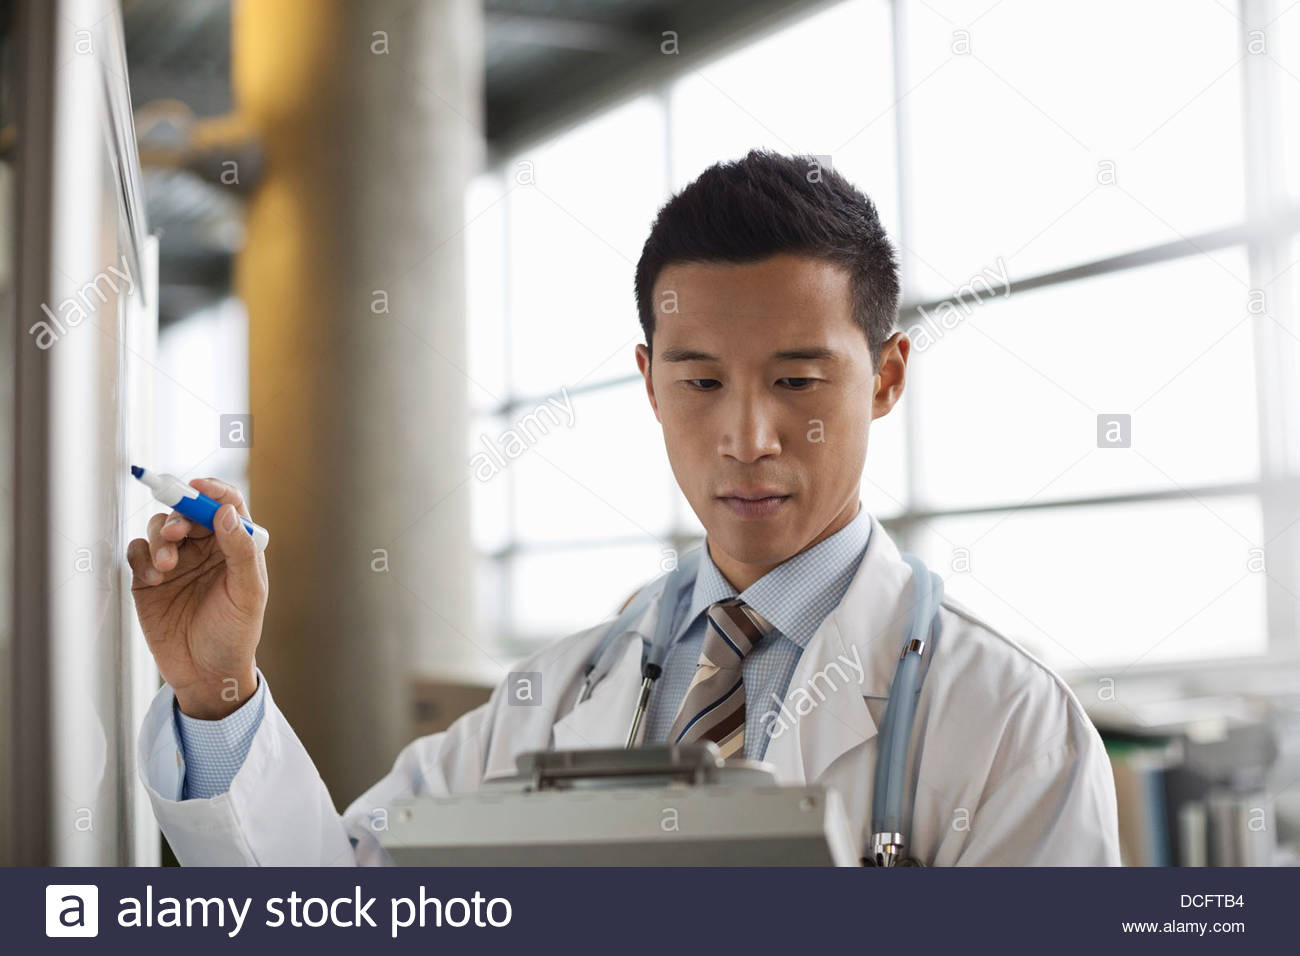 Médico varón copiando notas desde el portapapeles Foto de stock